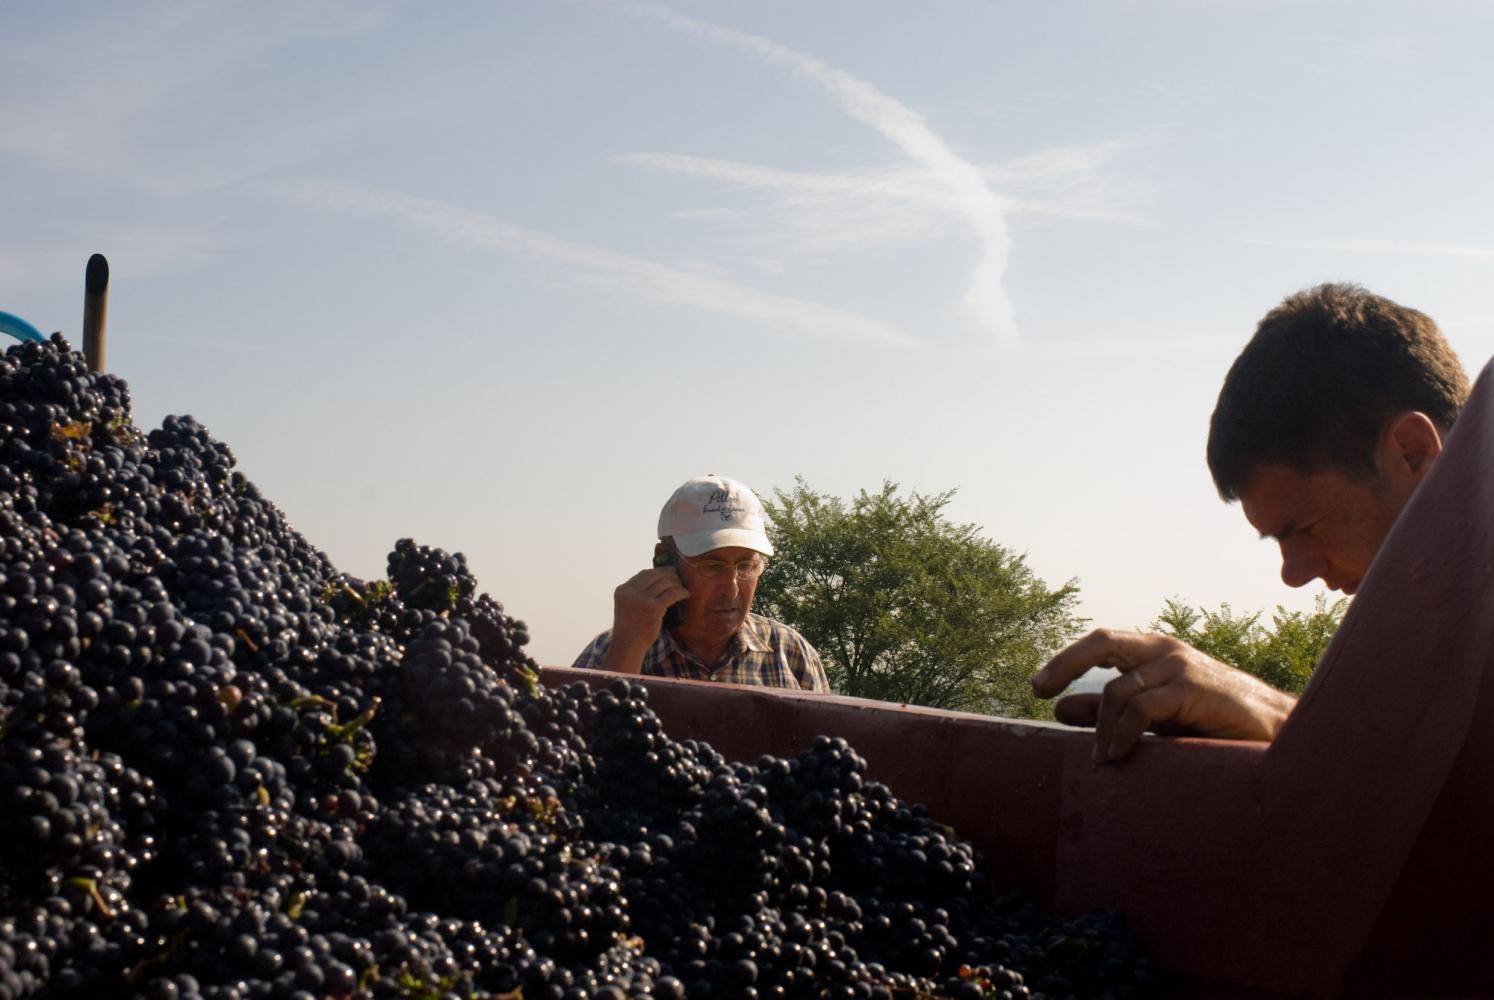 Les patrons :  Fernand au téléphone et James, près de la benne remplie de raisin noir. Pommard, Bourgogne, septembre 2009.